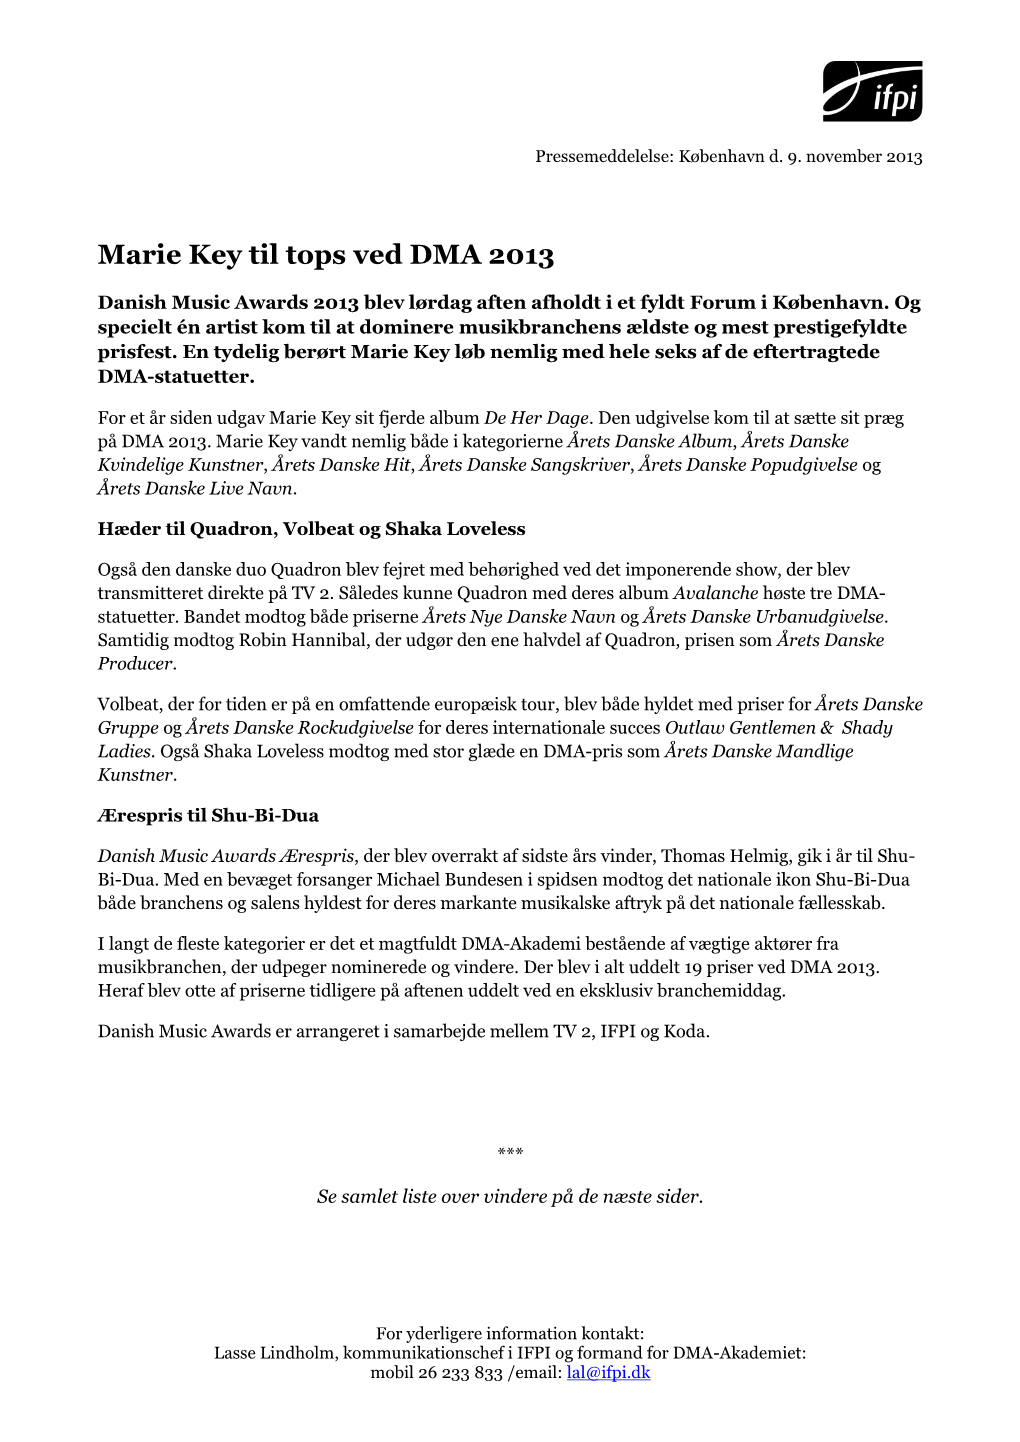 Marie Key Til Tops Ved DMA 2013